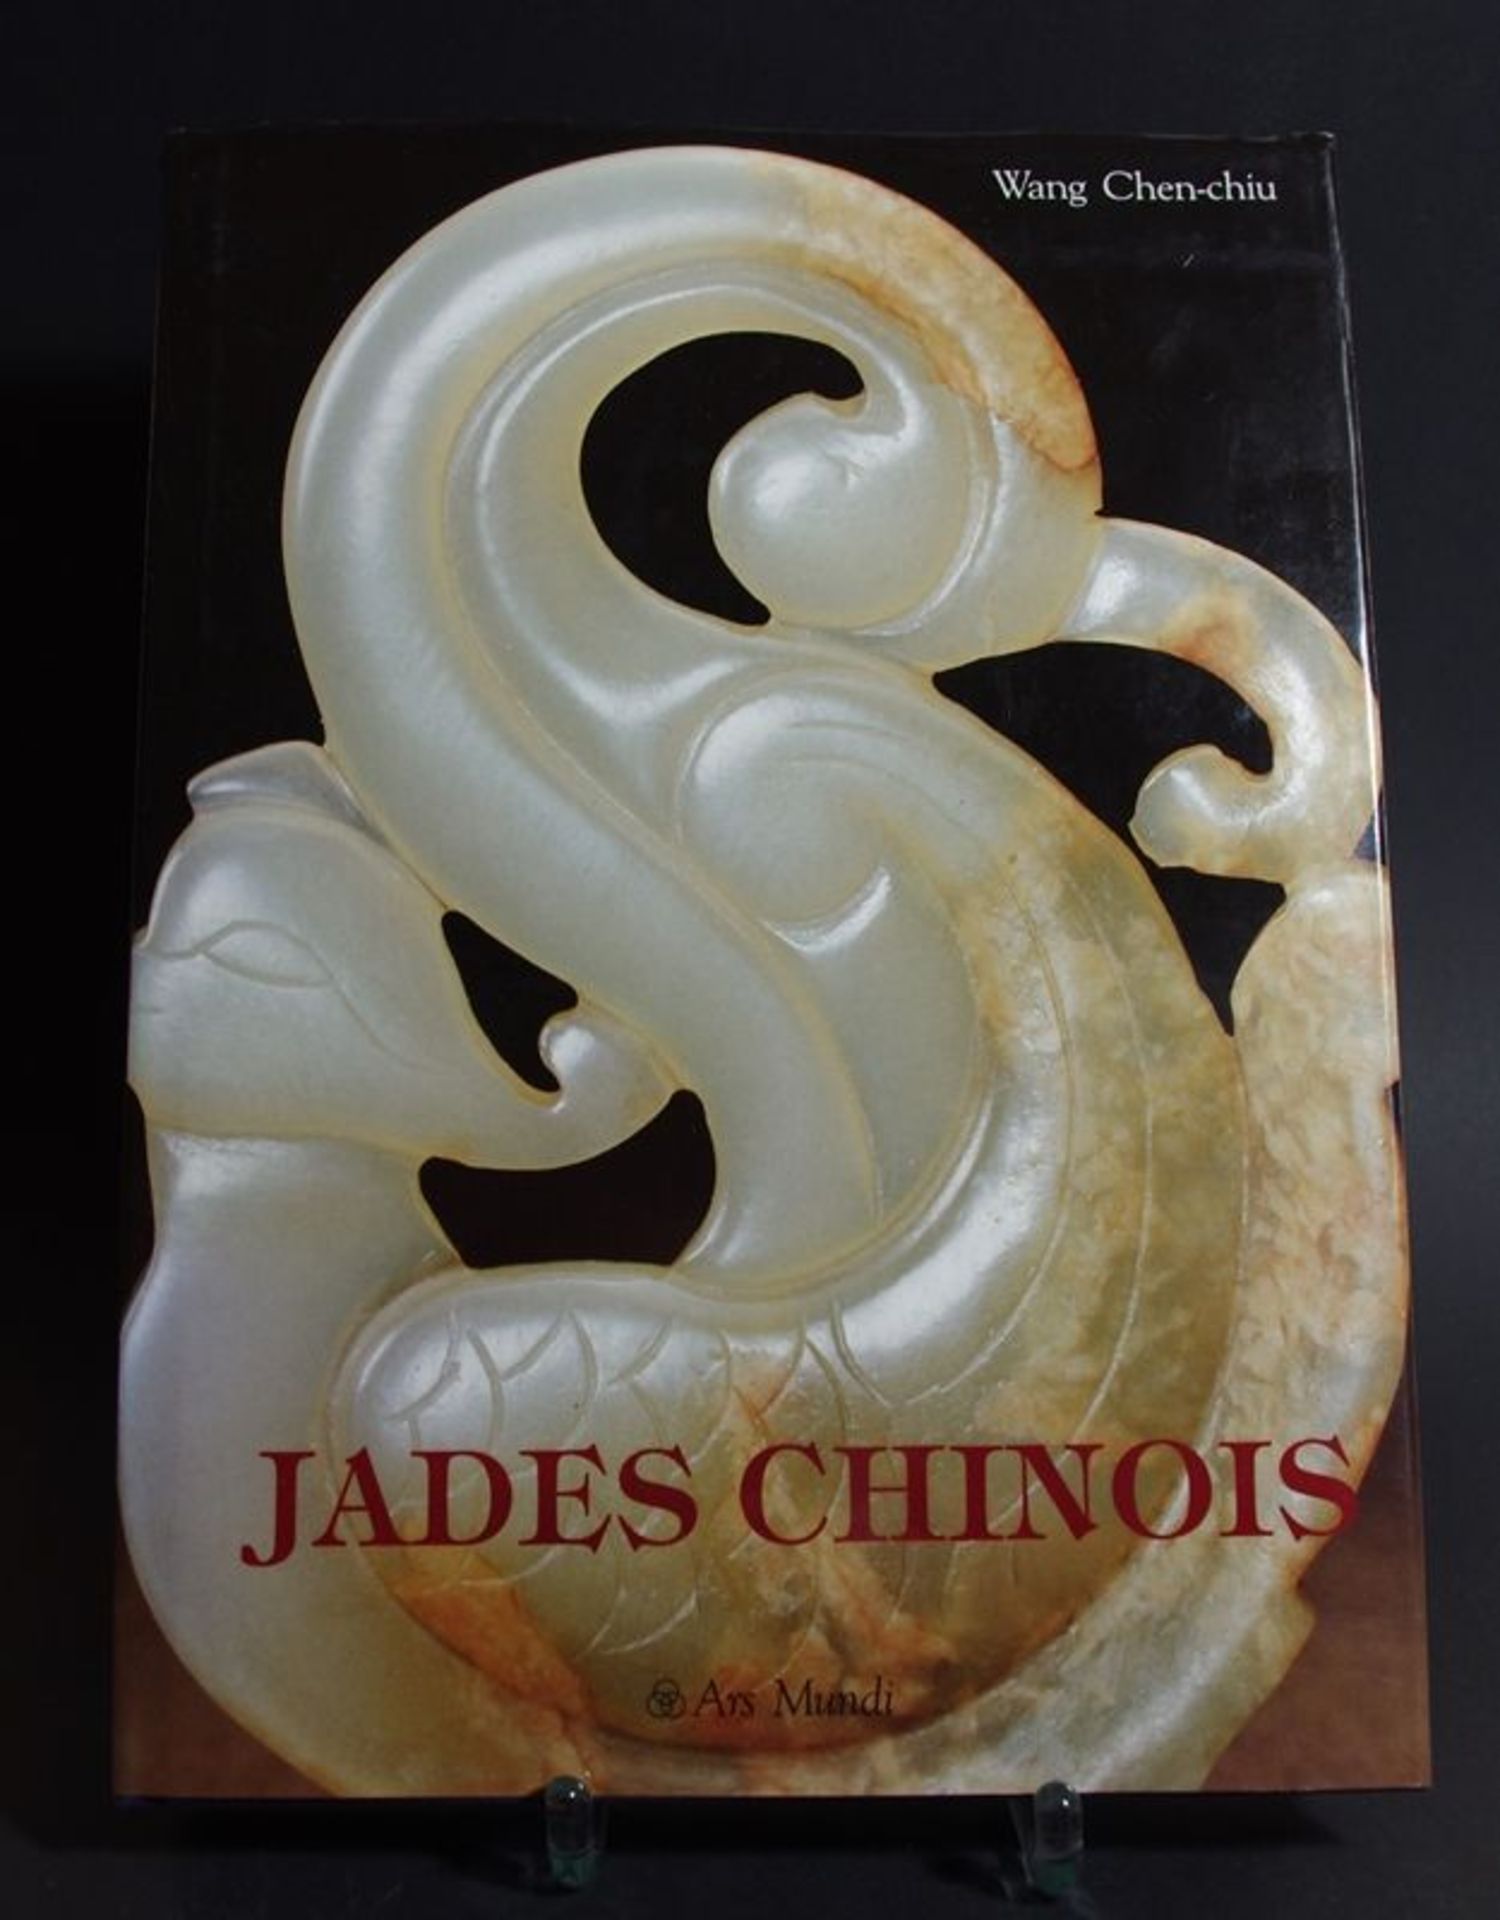 Fachliteratur - Jades Chinois / Wang Chen-chin, Ars Mundi Verlag 1994, französische Sprache,